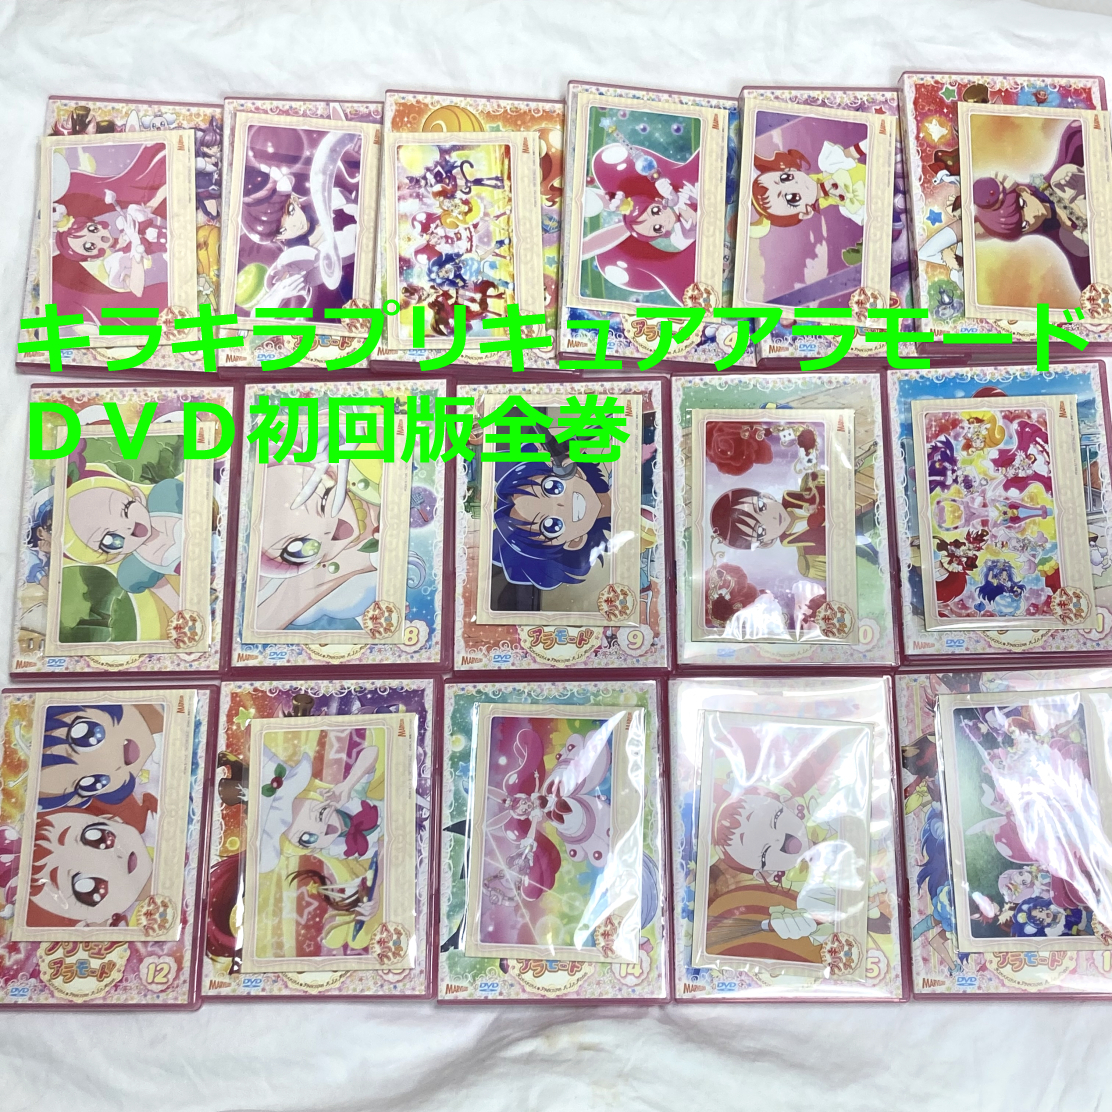 xs679 レンタルUP・DVD キラキラ☆プリキュアアラモード 全16巻